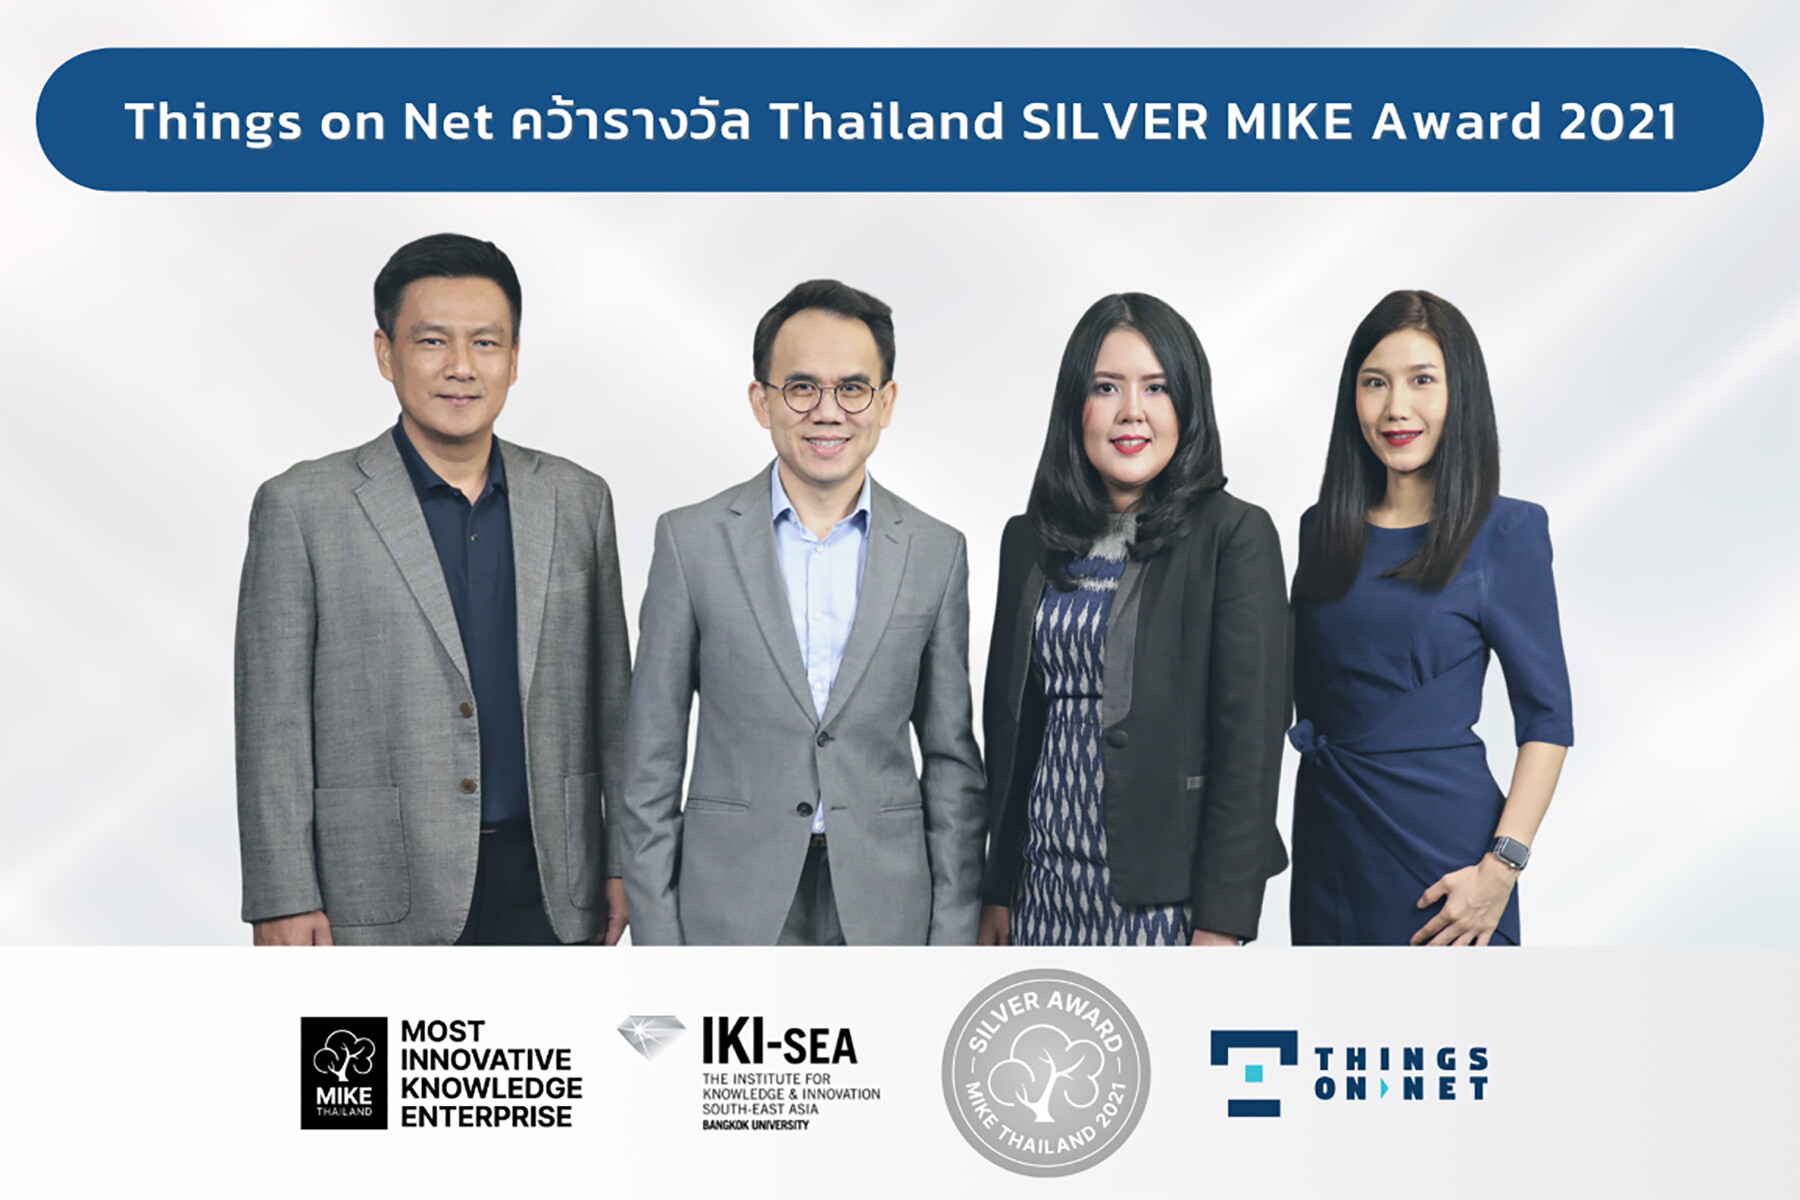 ติงส์ ออน เน็ต คว้ารางวัลสุดยอดองค์กรด้านนวัตกรรมและองค์ความรู้ Thailand SILVER MIKE Award 2021